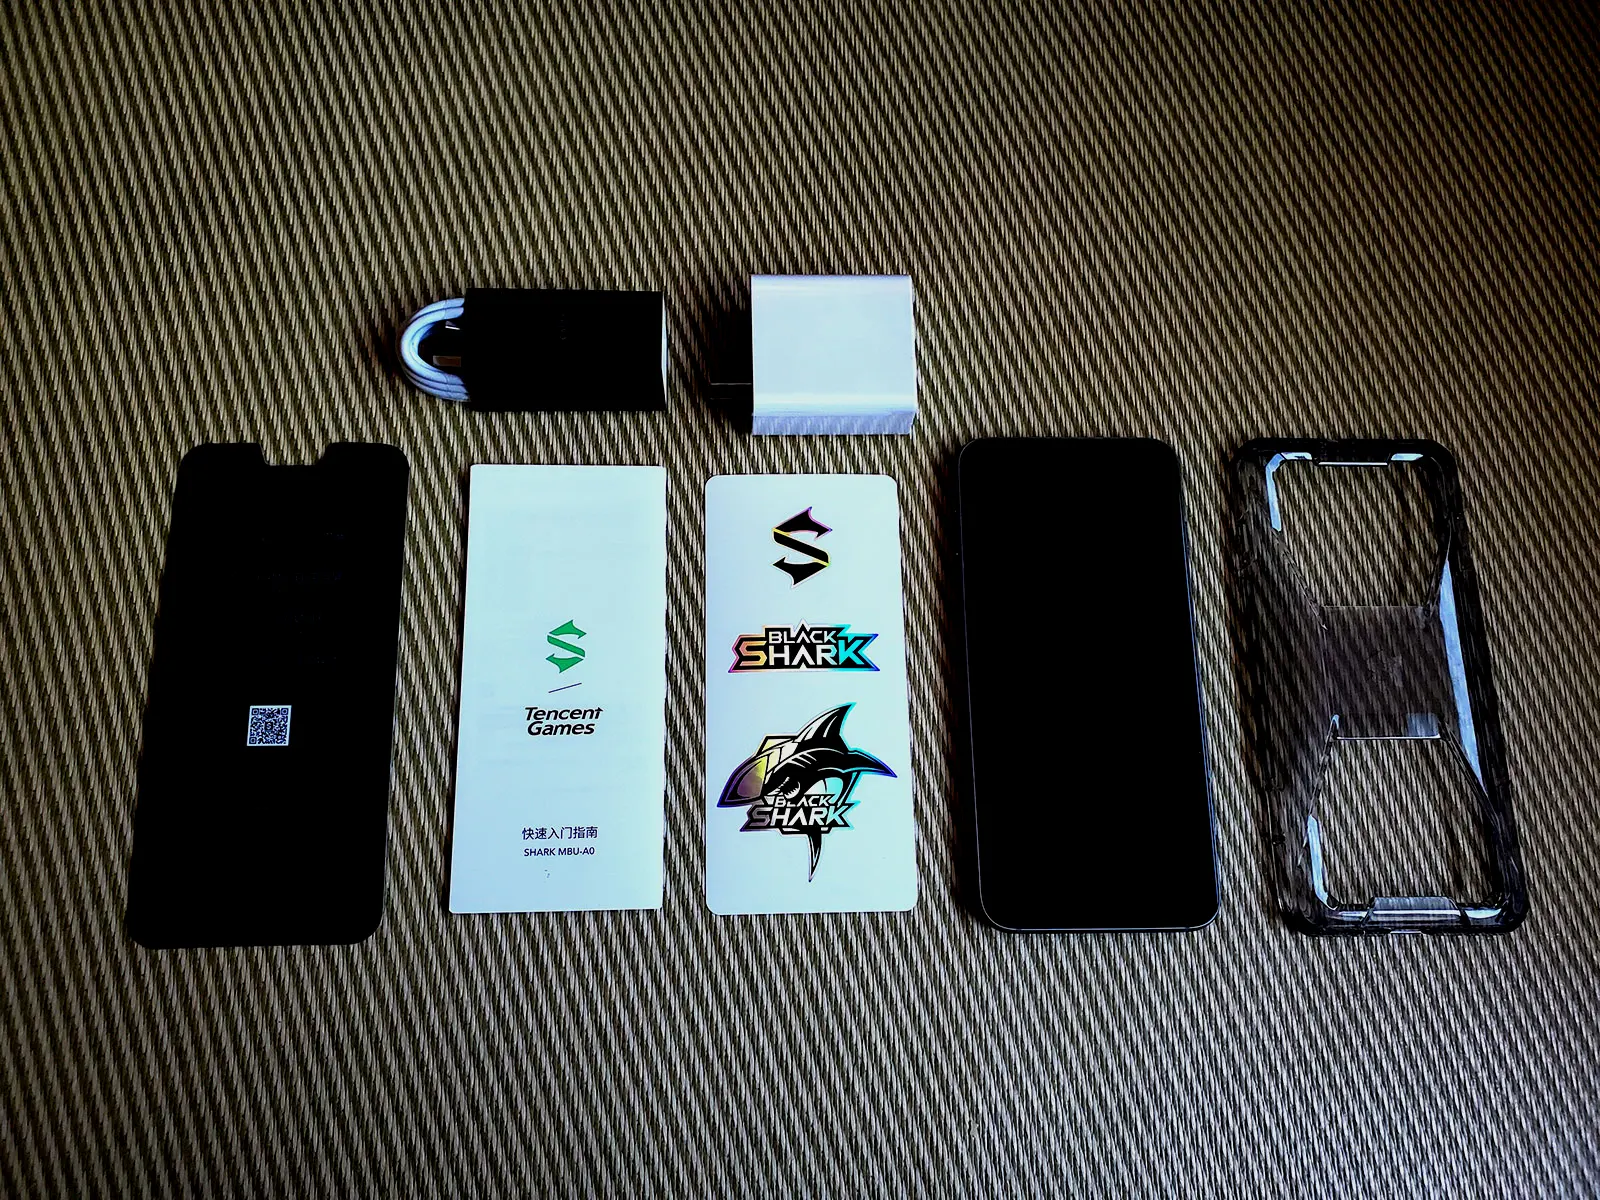 一部已经贴膜的腾讯黑鲨游戏手机3 Pro、一个透明手机壳、一张黑鲨贴纸、一个卡针、一个65W充电器以及一根Type-C充电线